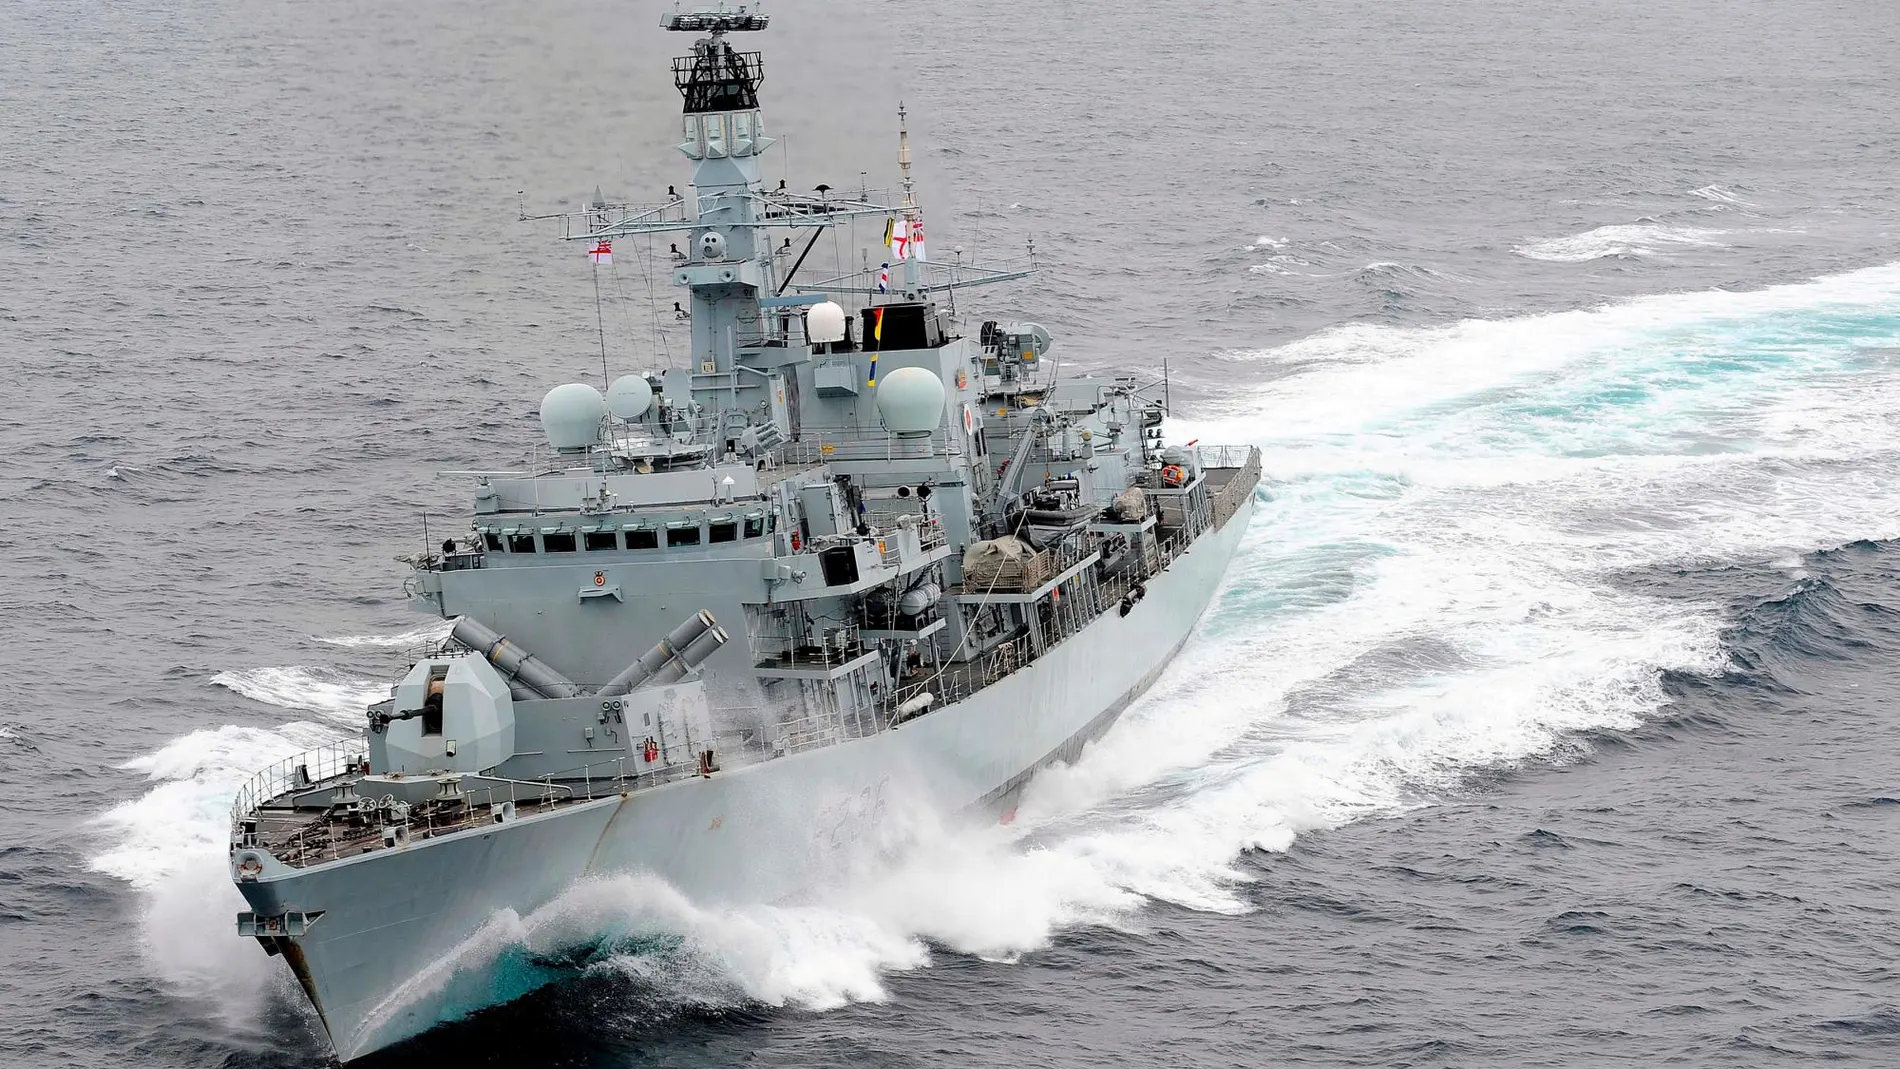 la fragata “HMS Montrose” se interpuso entre el petrolero y las barcazas iraníes y las obligó a retirarse